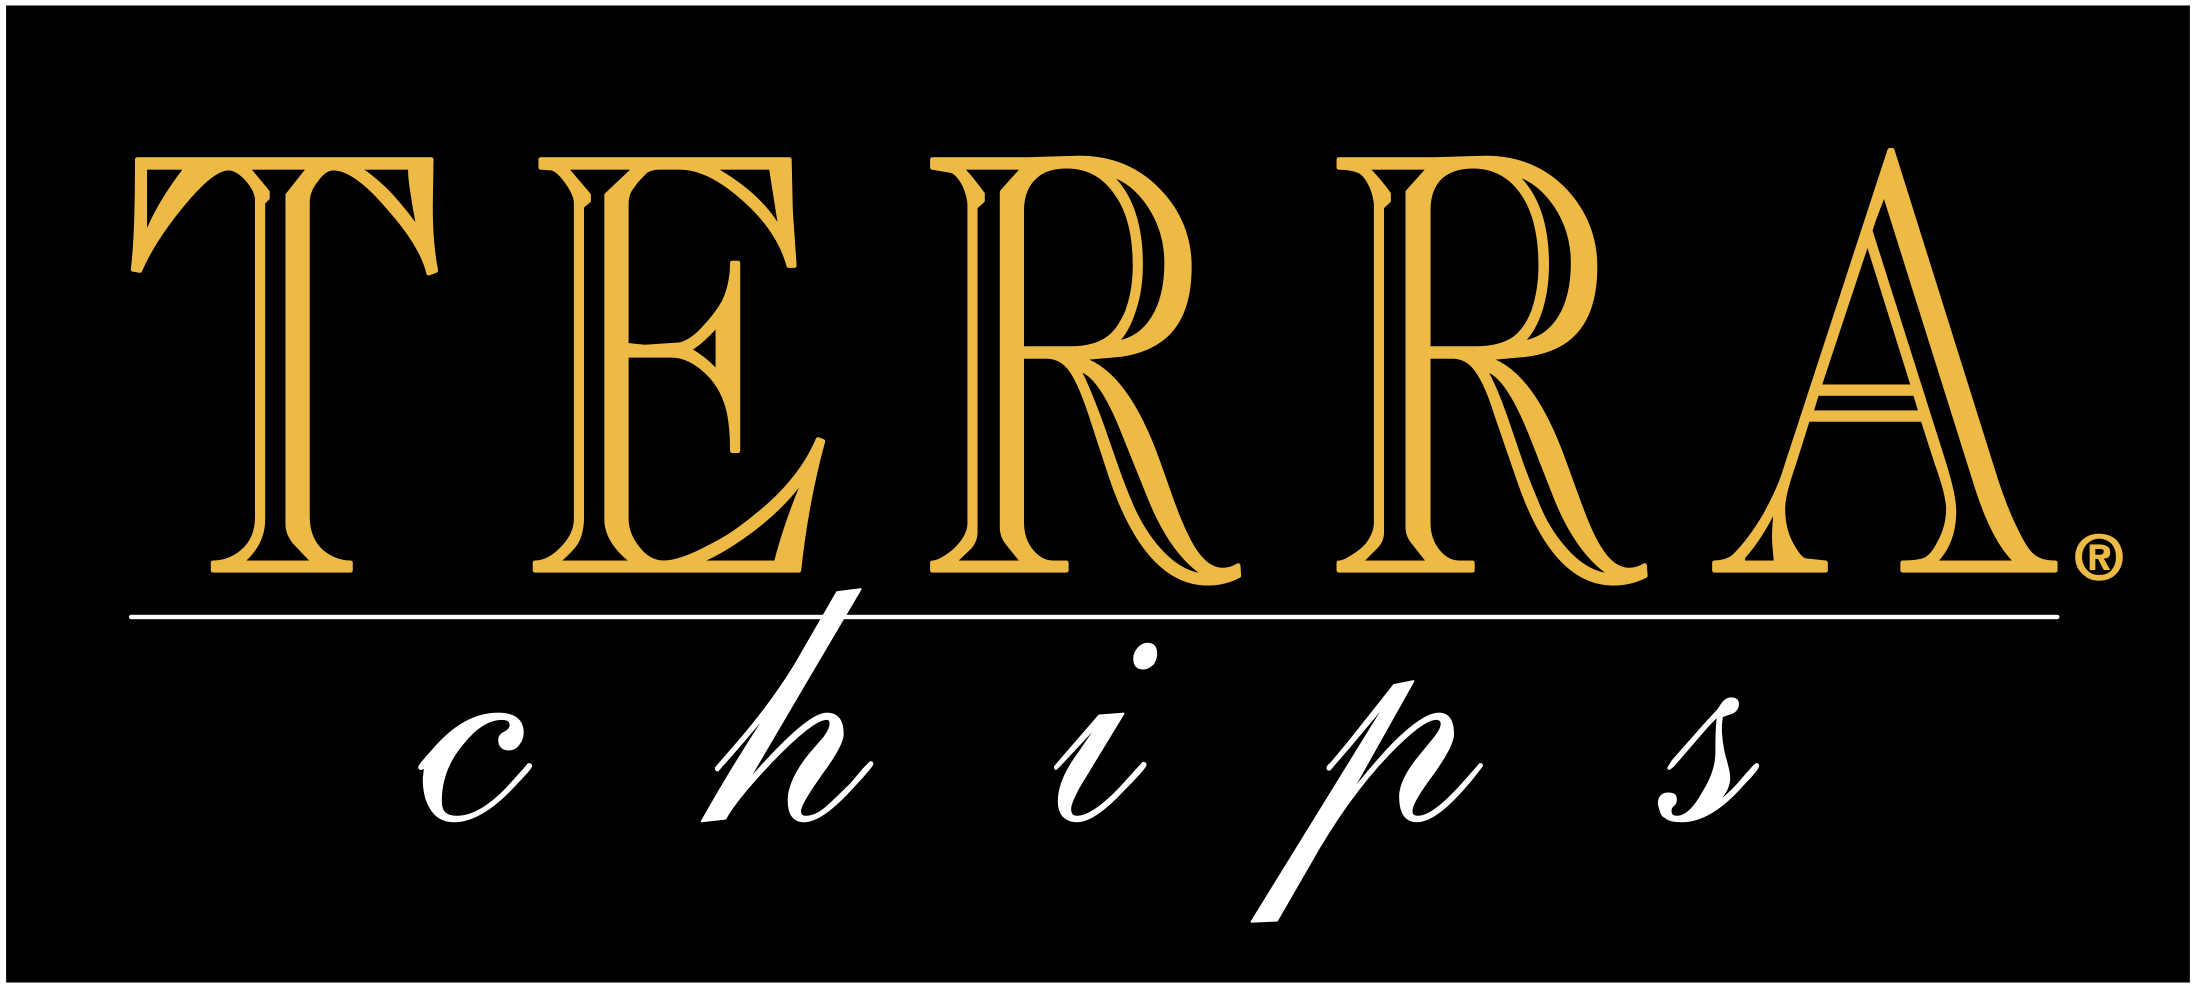 Terra Chips Logo Png Transparent - Terra Chips Logo Png (2400x2400), Png Download